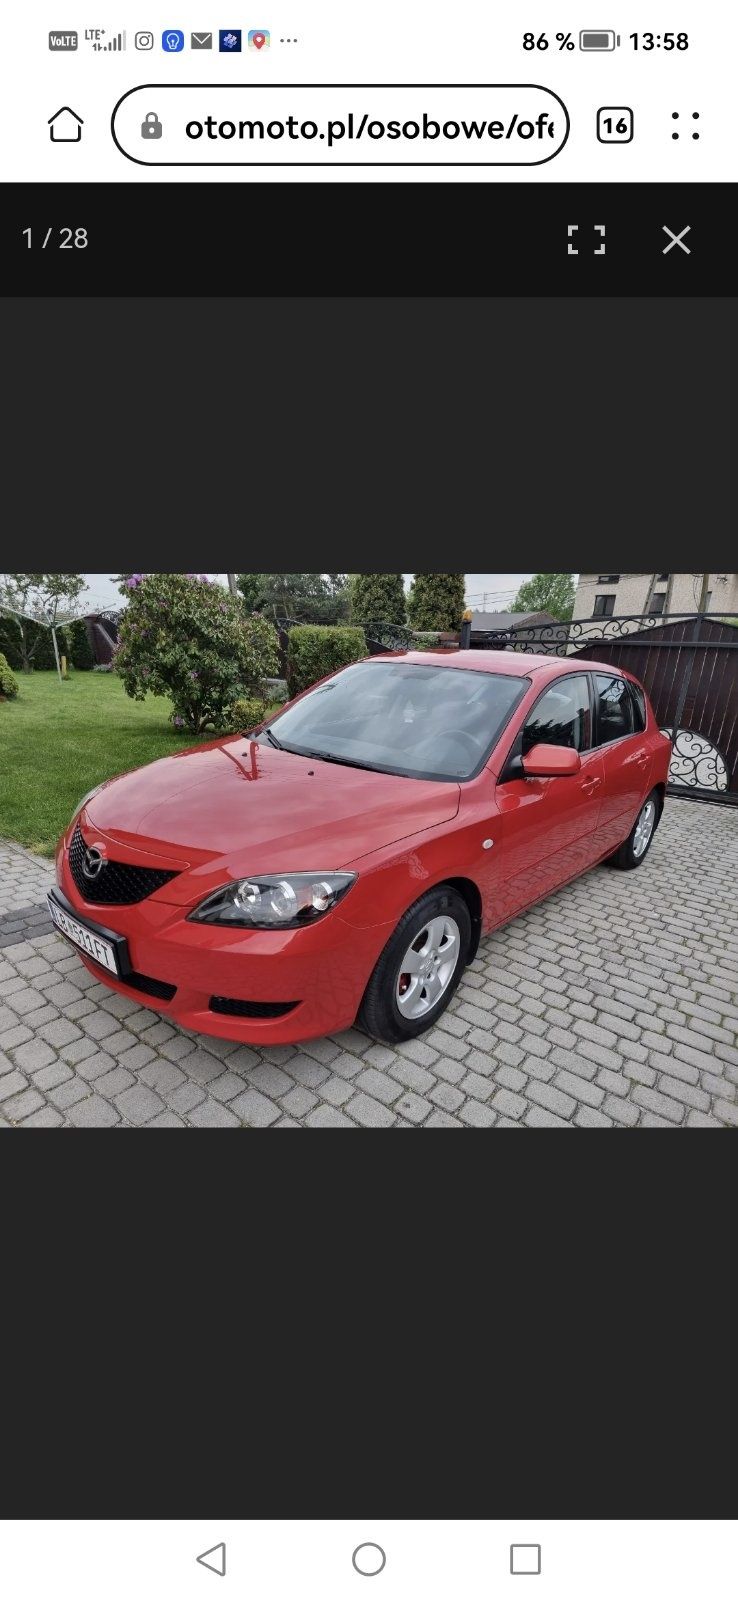 Sprzedam samochód Mazda 3